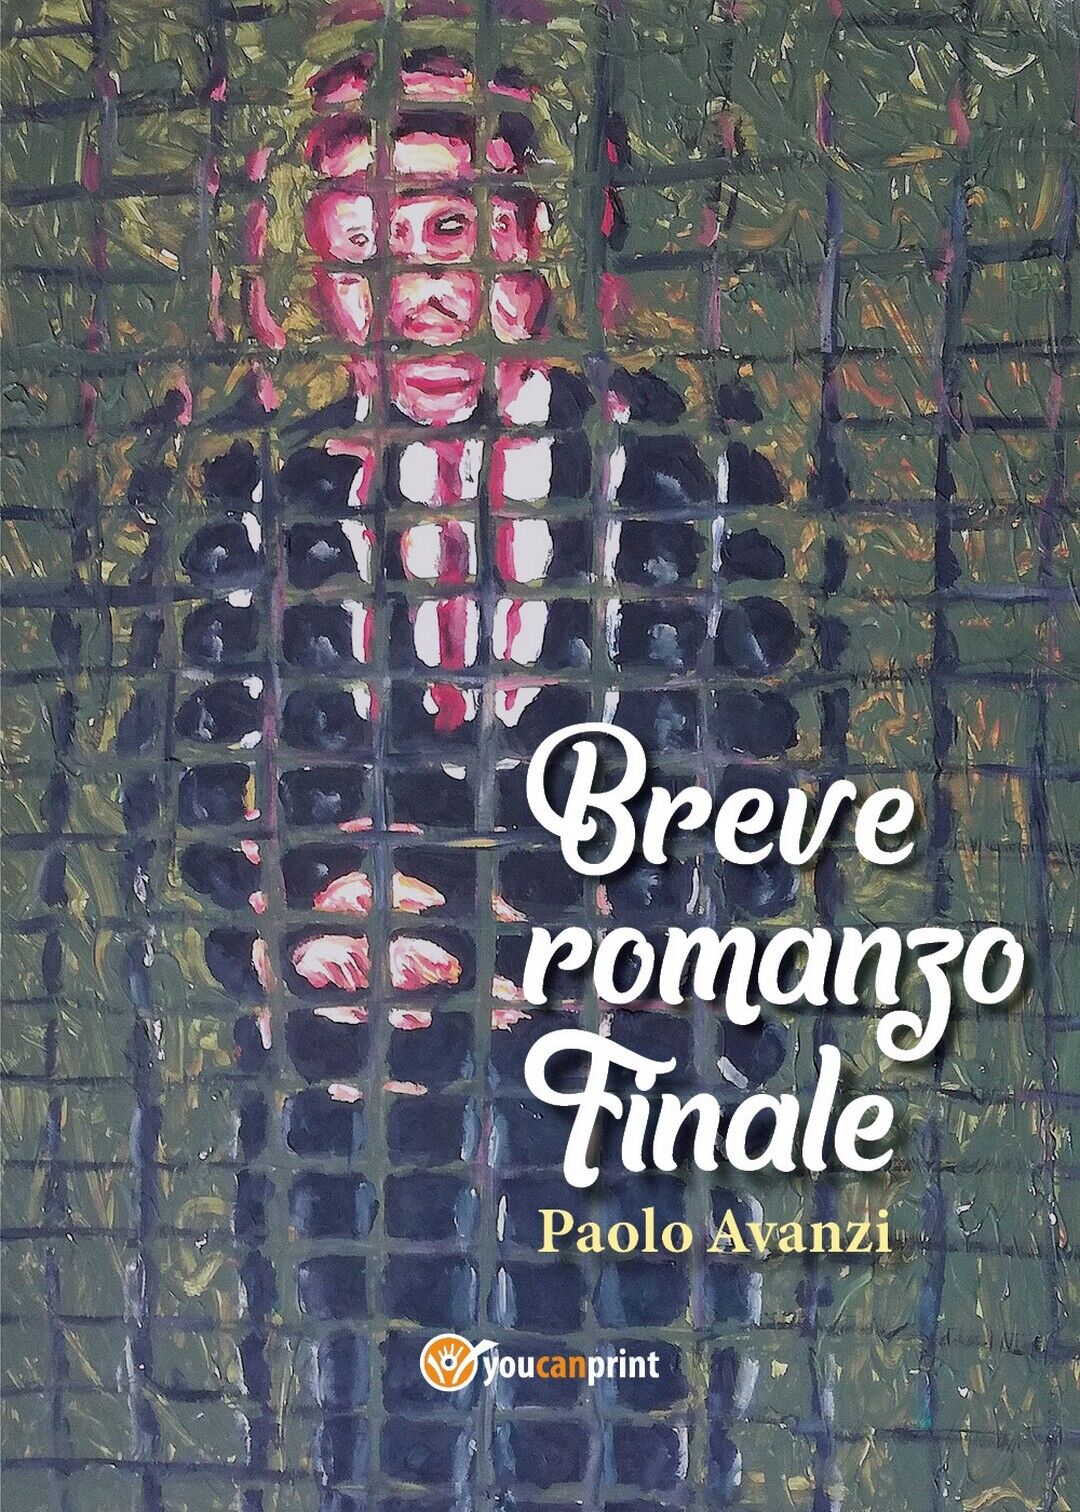 Breve romanzo finale  di Paolo Avanzi,  2020,  Youcanprint